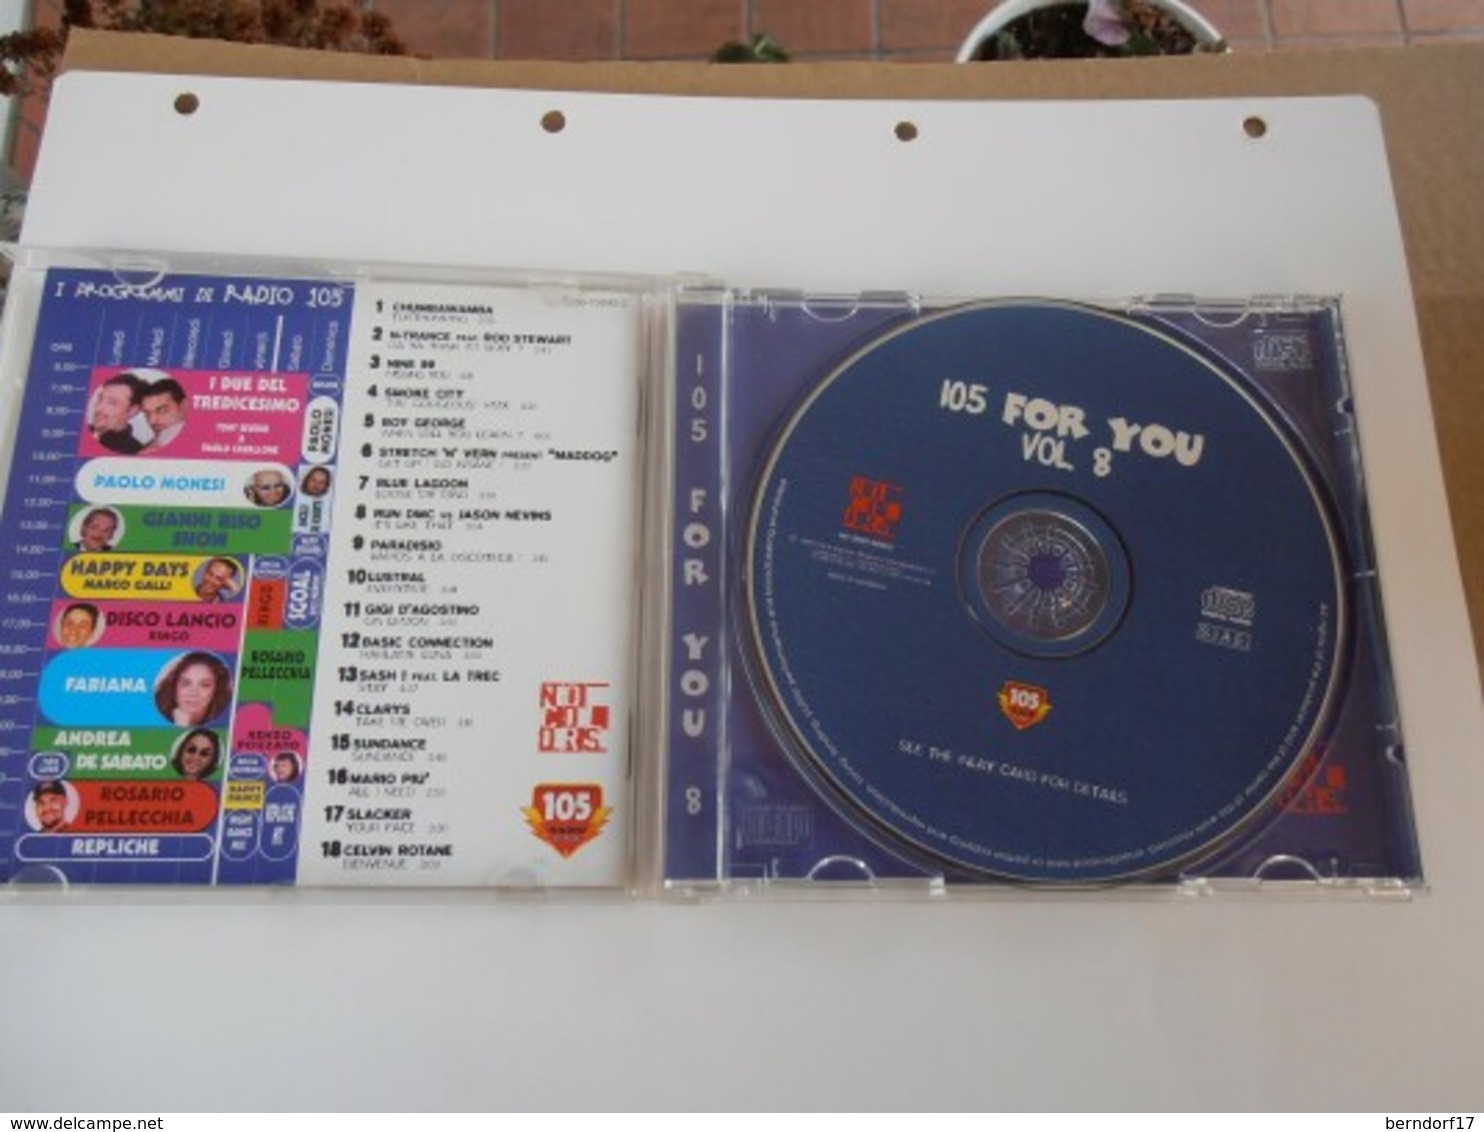 105 For You 8 - 1997 - CD - Disco, Pop